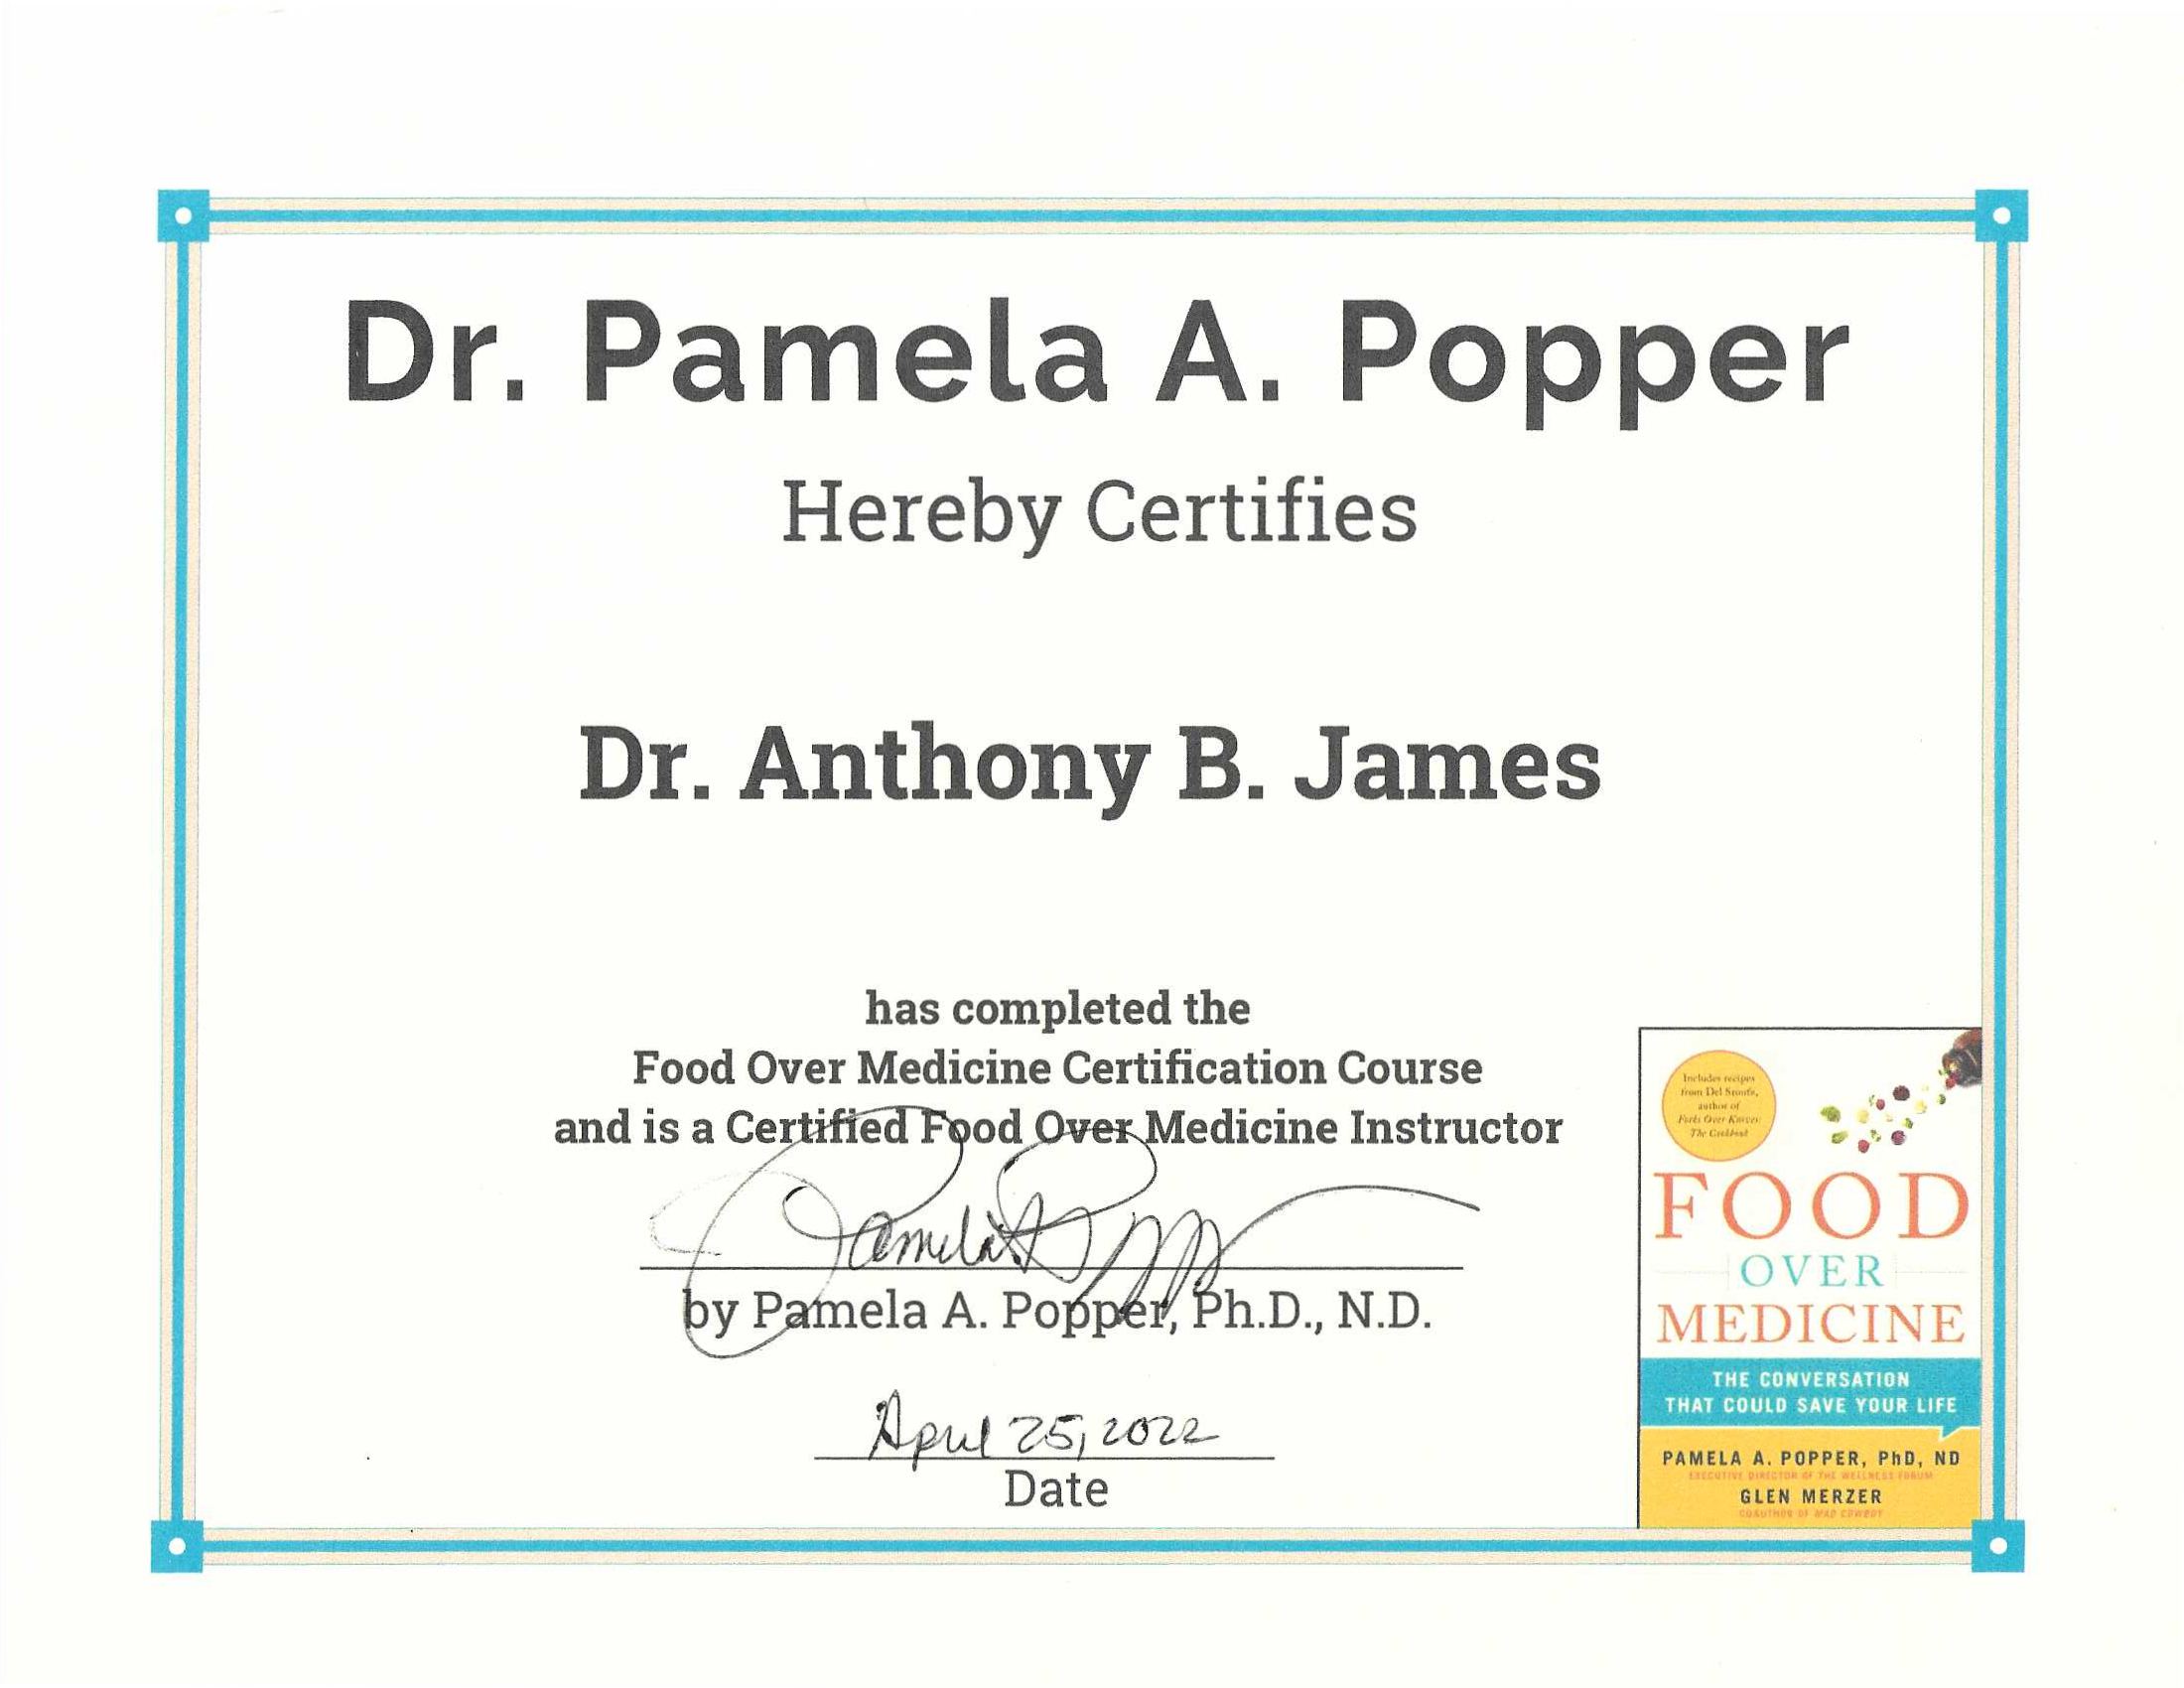 Dr. Anthony B. James Certified Food Over Medicine Instructor